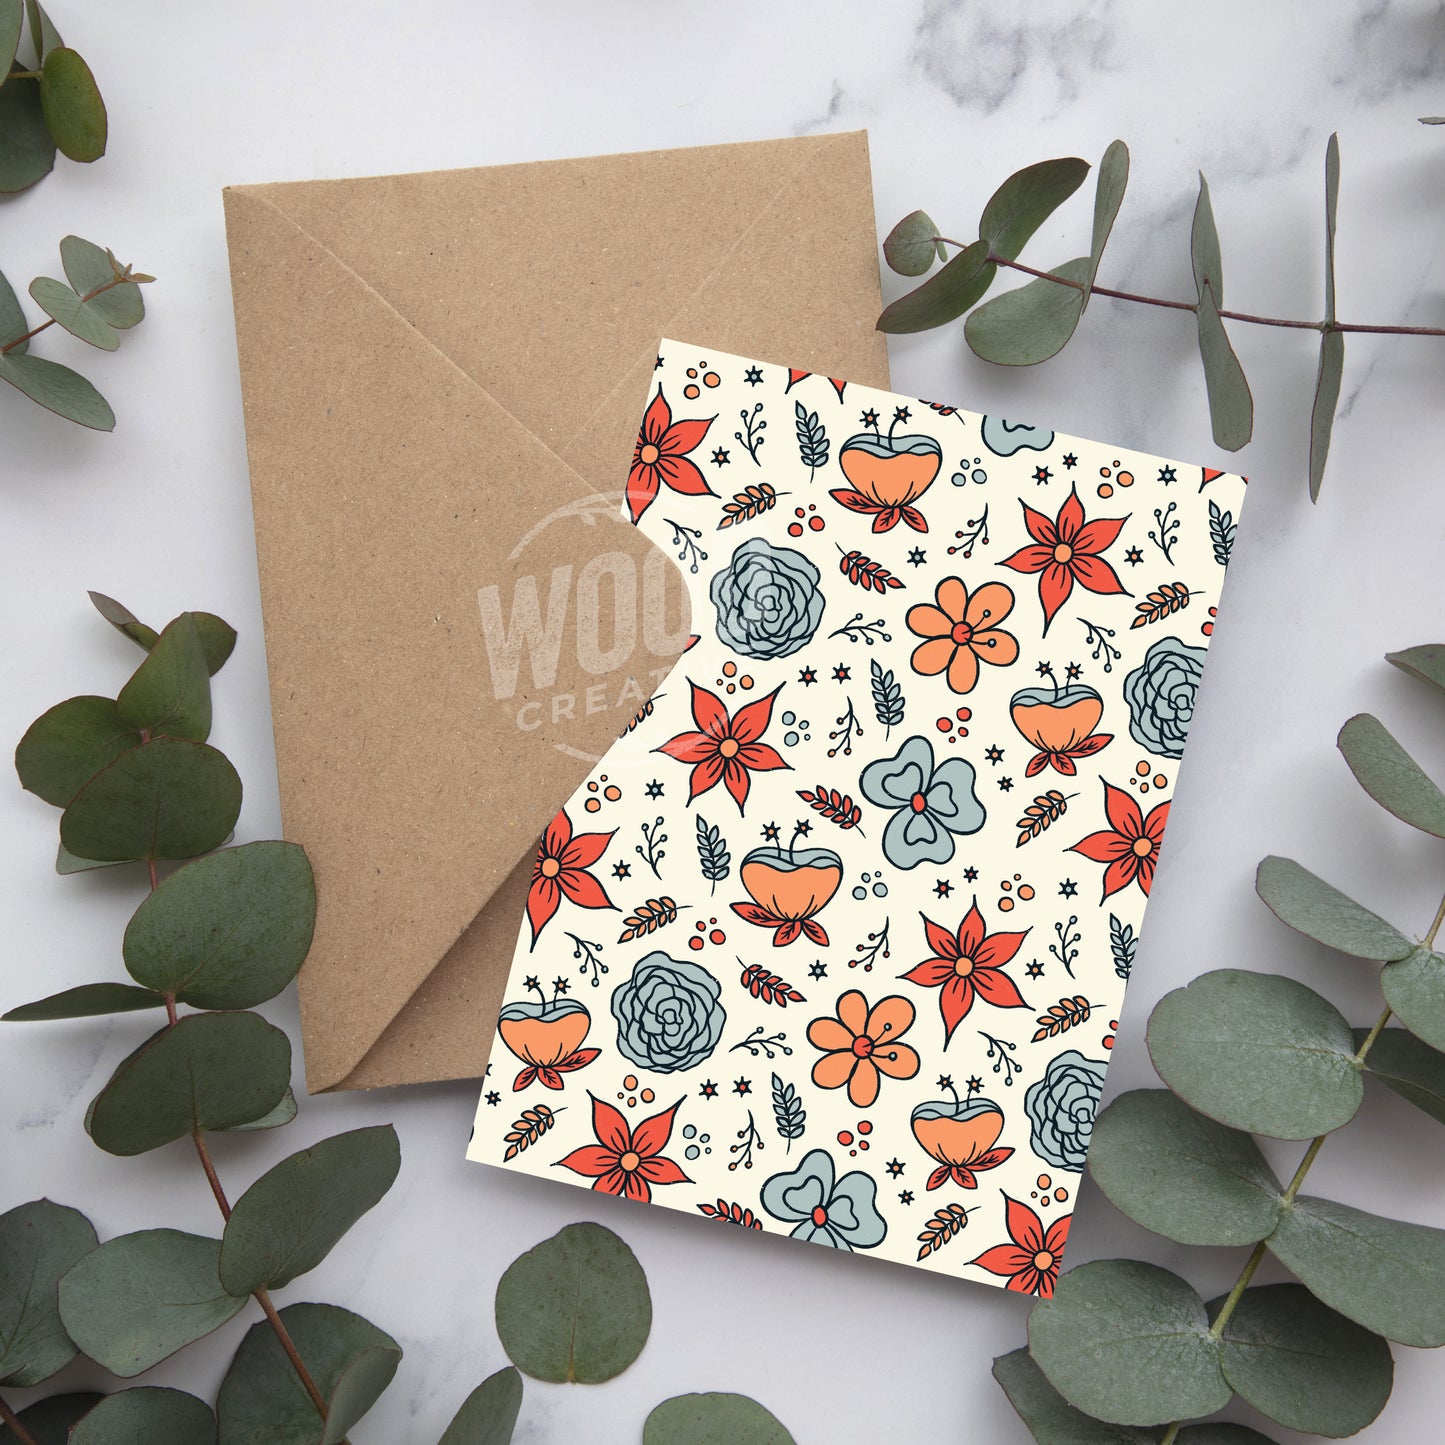 Floral Greeting Card Bundle - Pack of 3